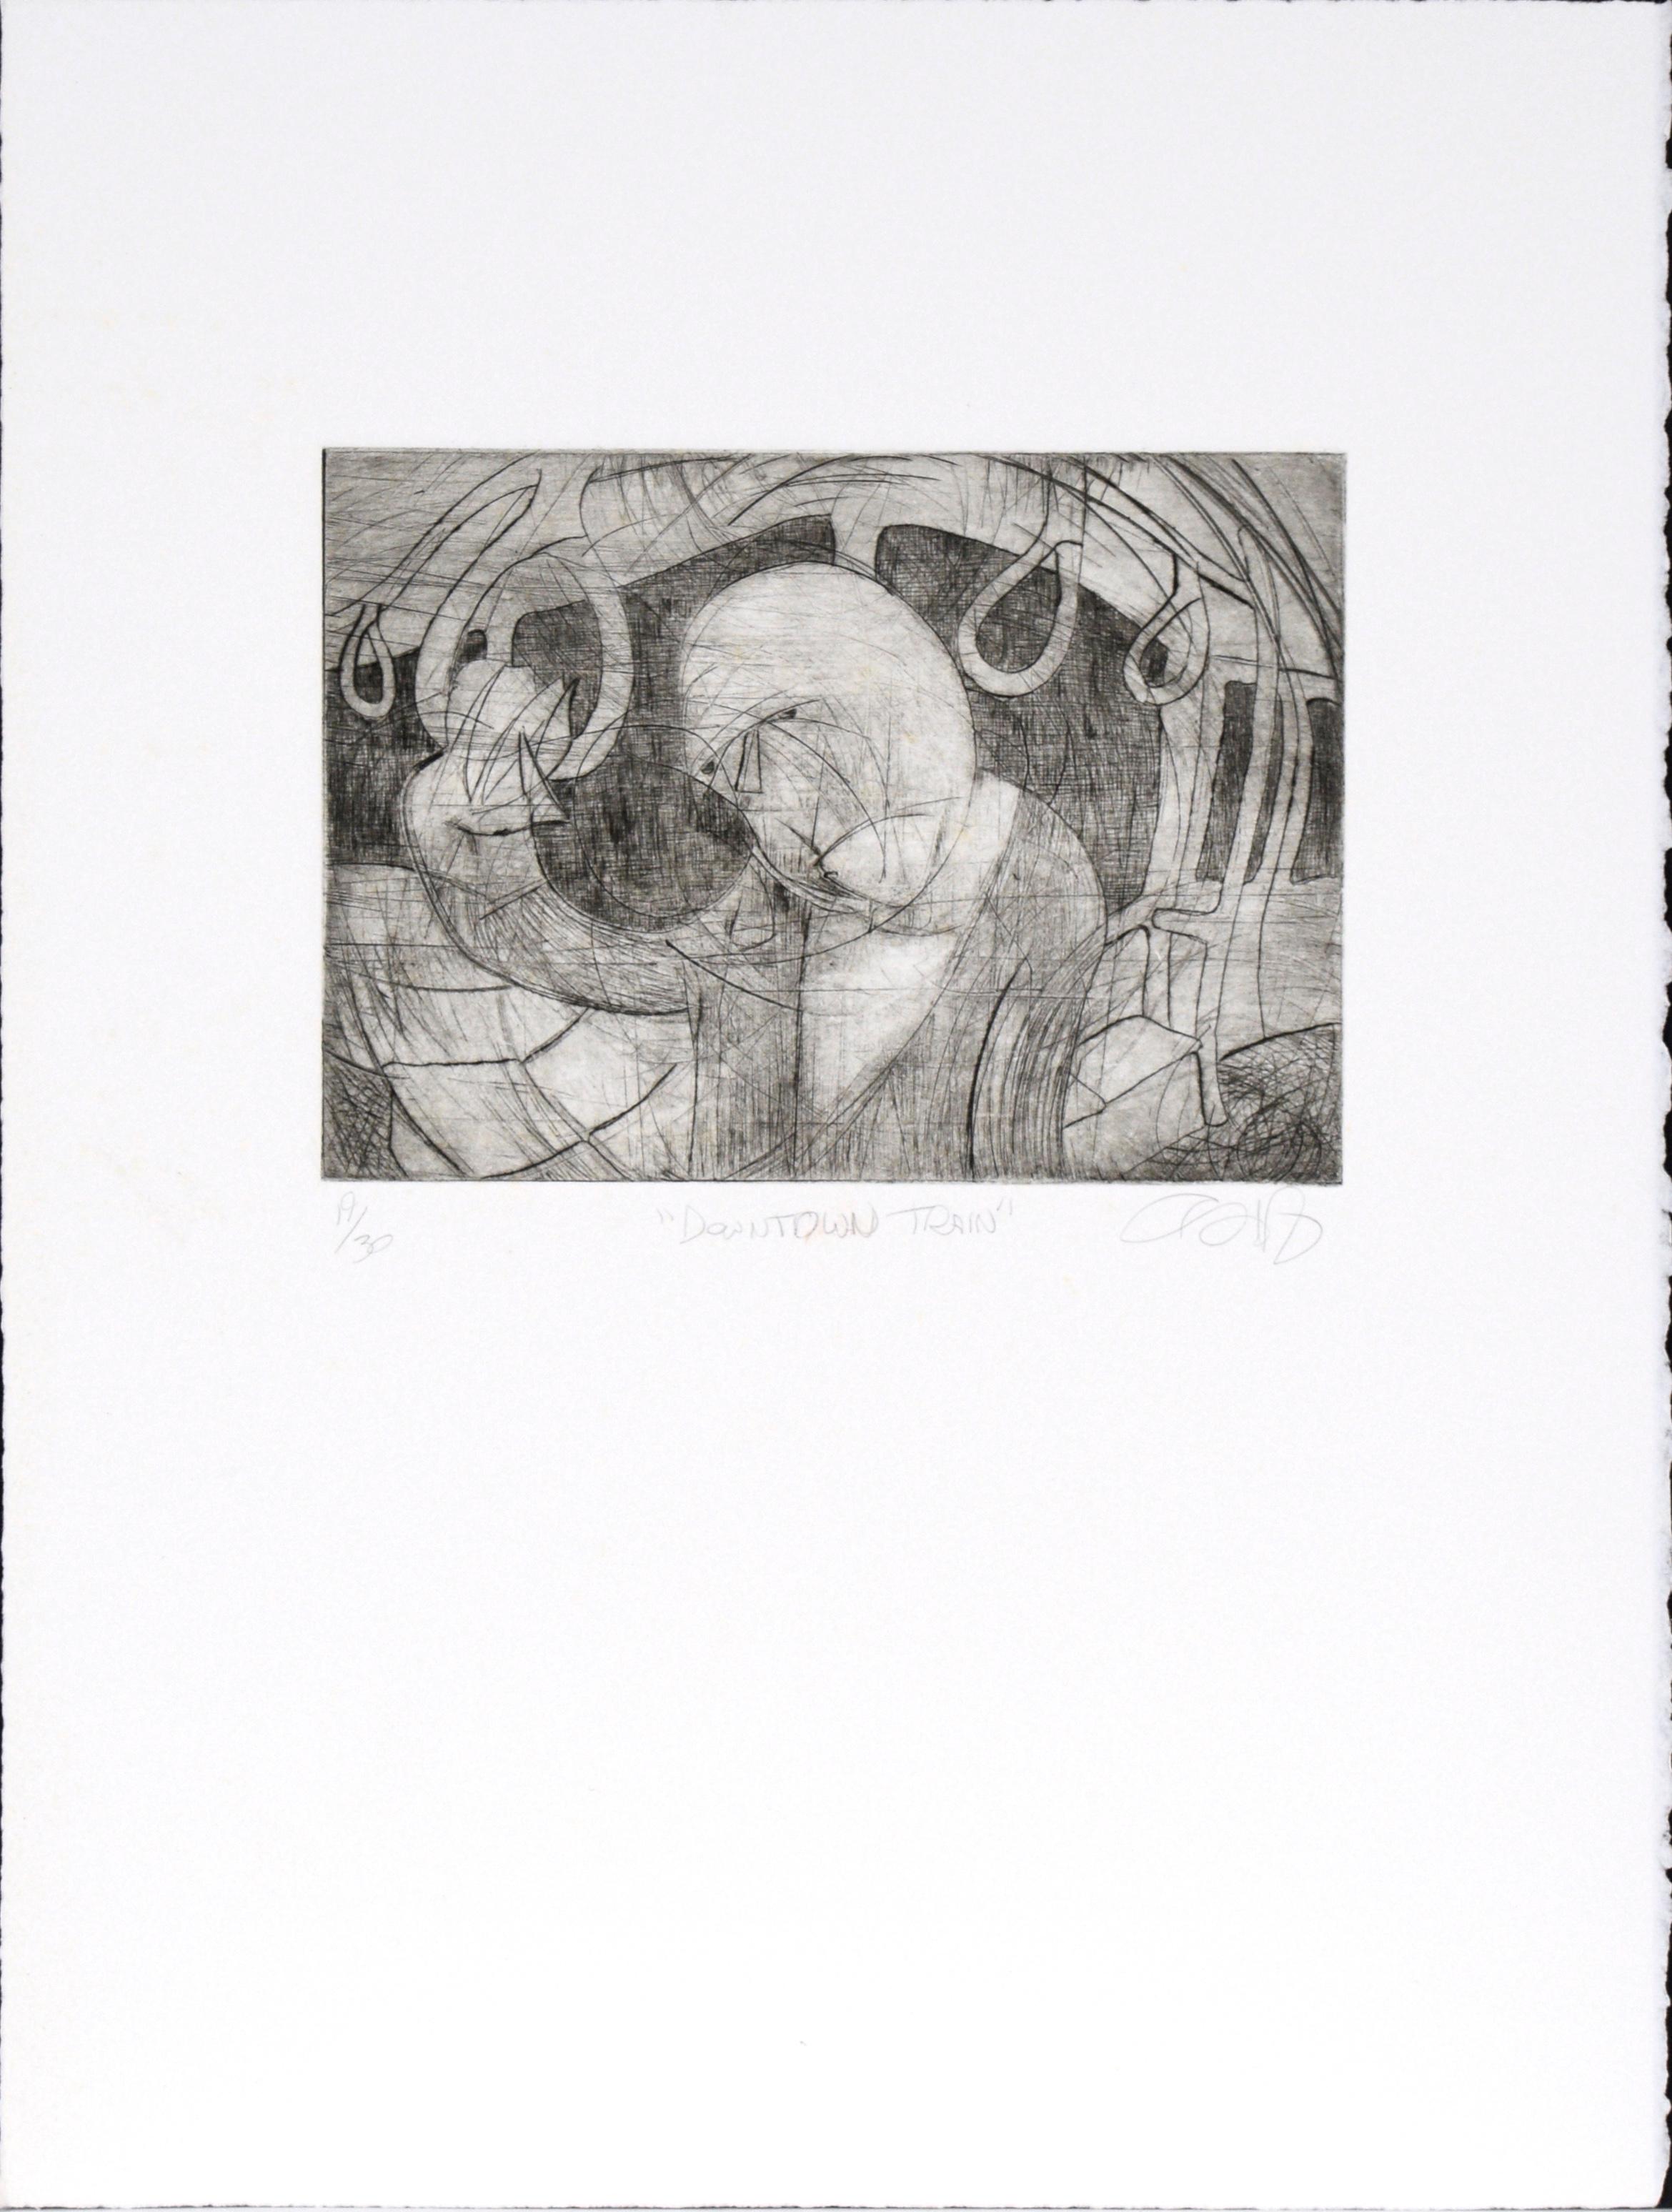 Passages - Eine Suite von 16 Drucken von Patricia Pearce und anderen Künstlern (Zeitgenössisch), Print, von Patricia A Pearce